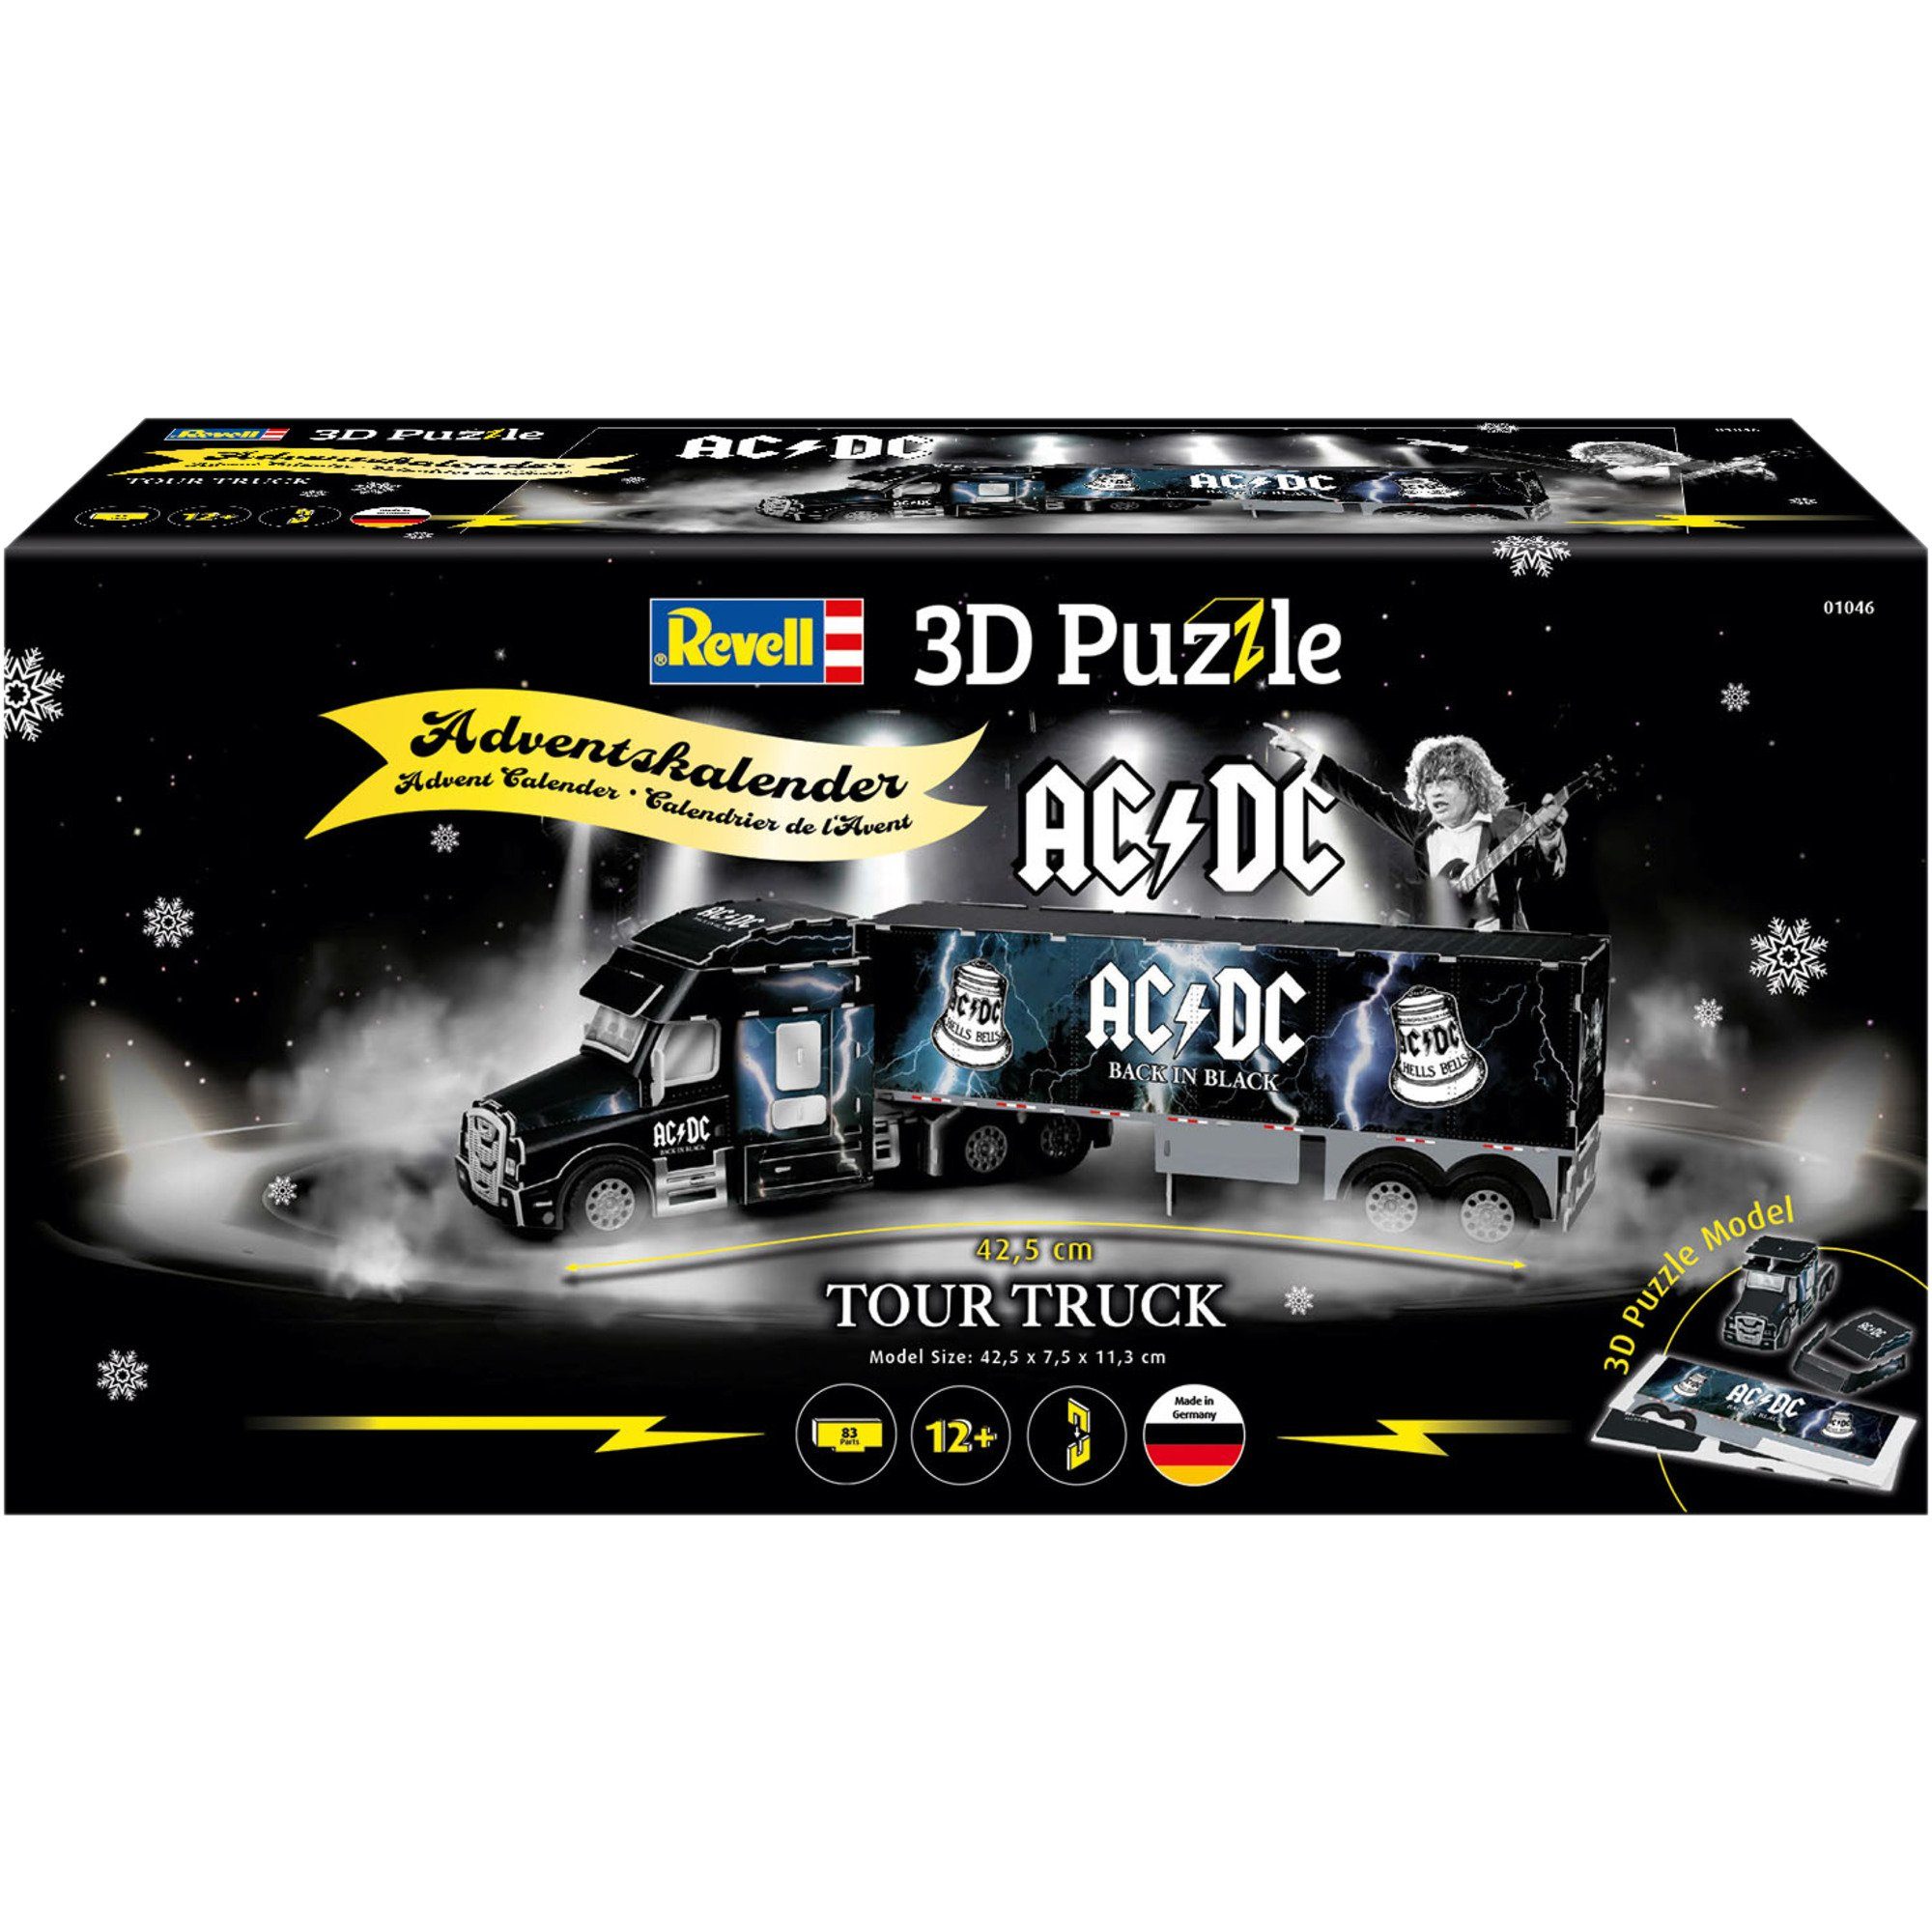 Revell® Puzzle Revell AC/DC Puzzleteile 3D-Puzzle Adventskalender Truck, Tour